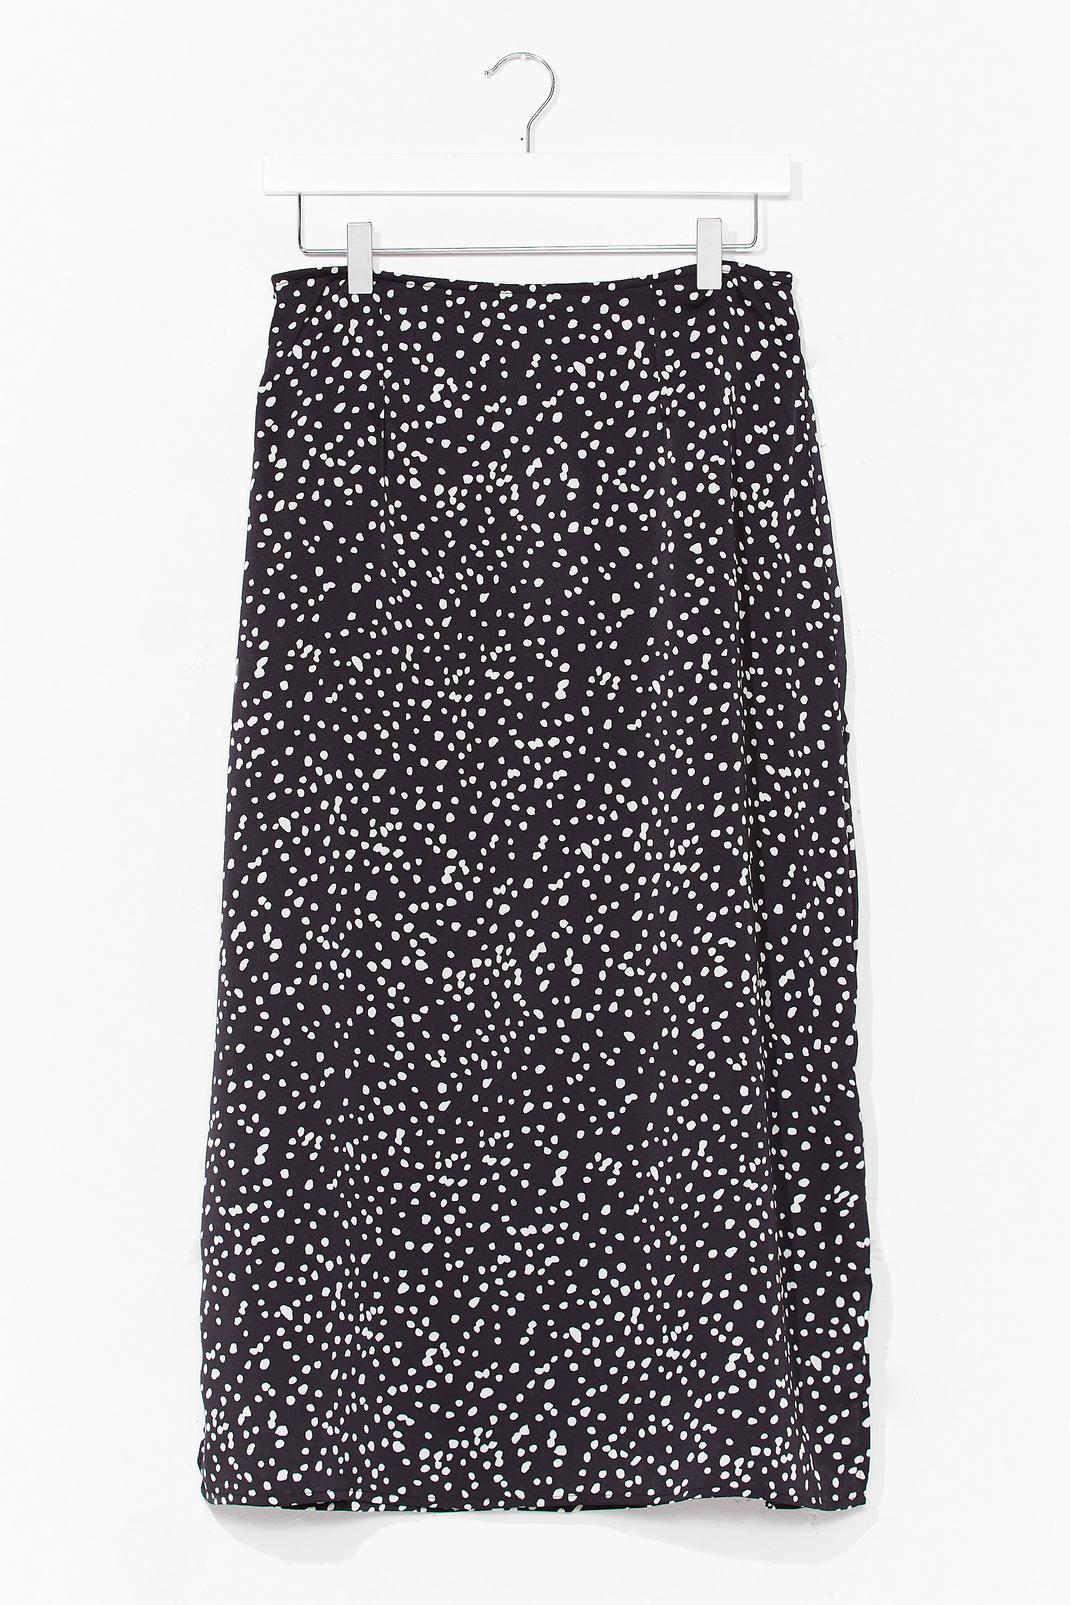 Black Slit the Cheque Polka Dot Midi Skirt image number 1